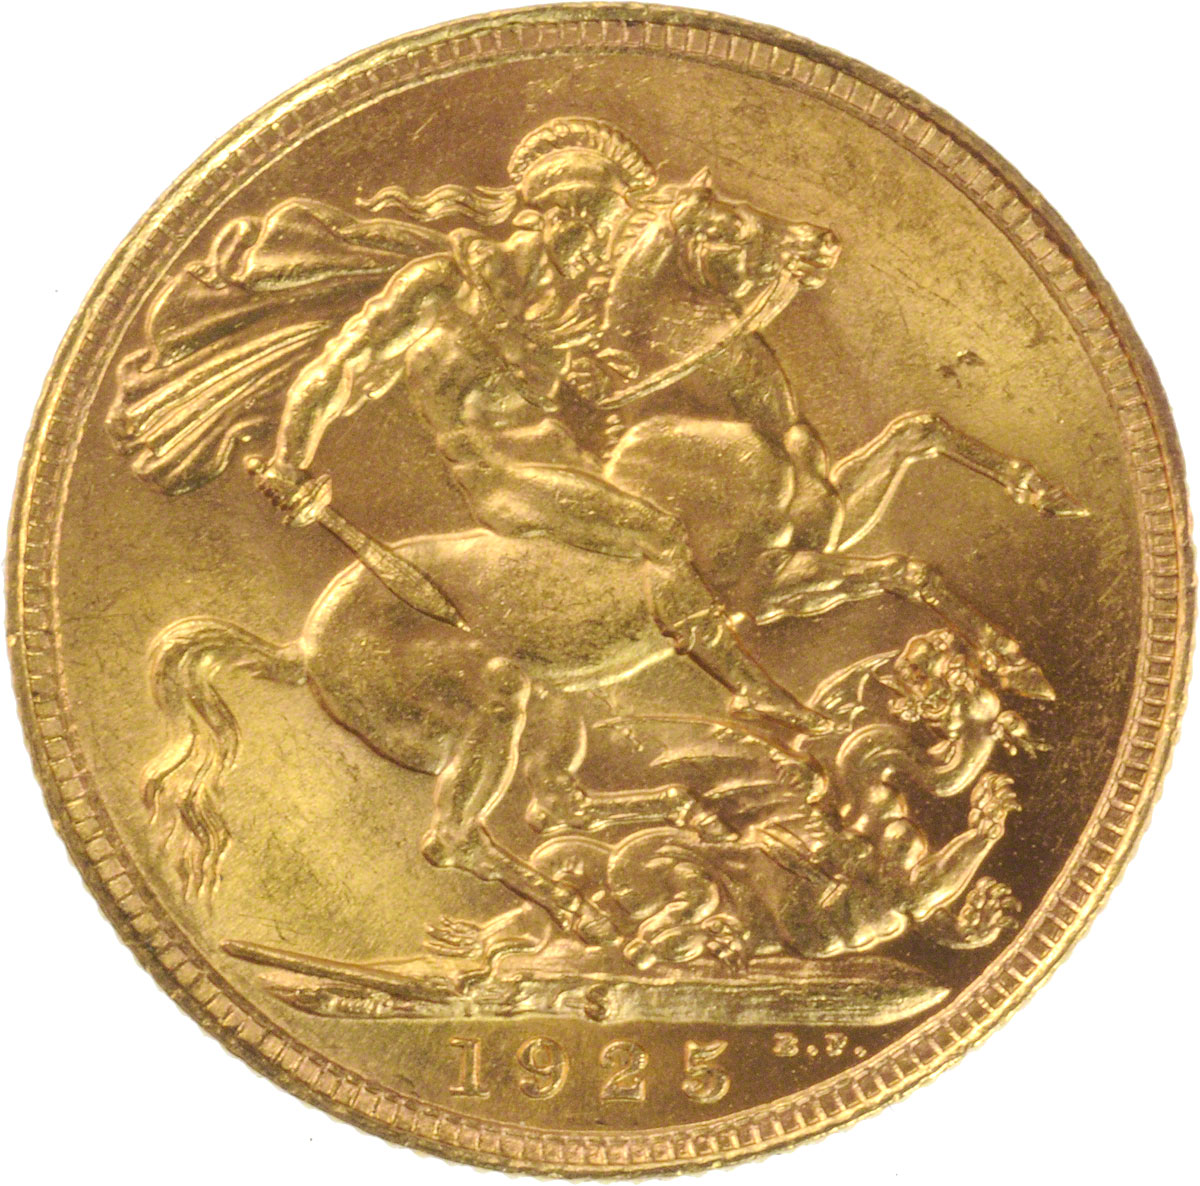 1925 Γεώργιος Ε’ (Νομισματοκοπείο Σίδνεϊ)